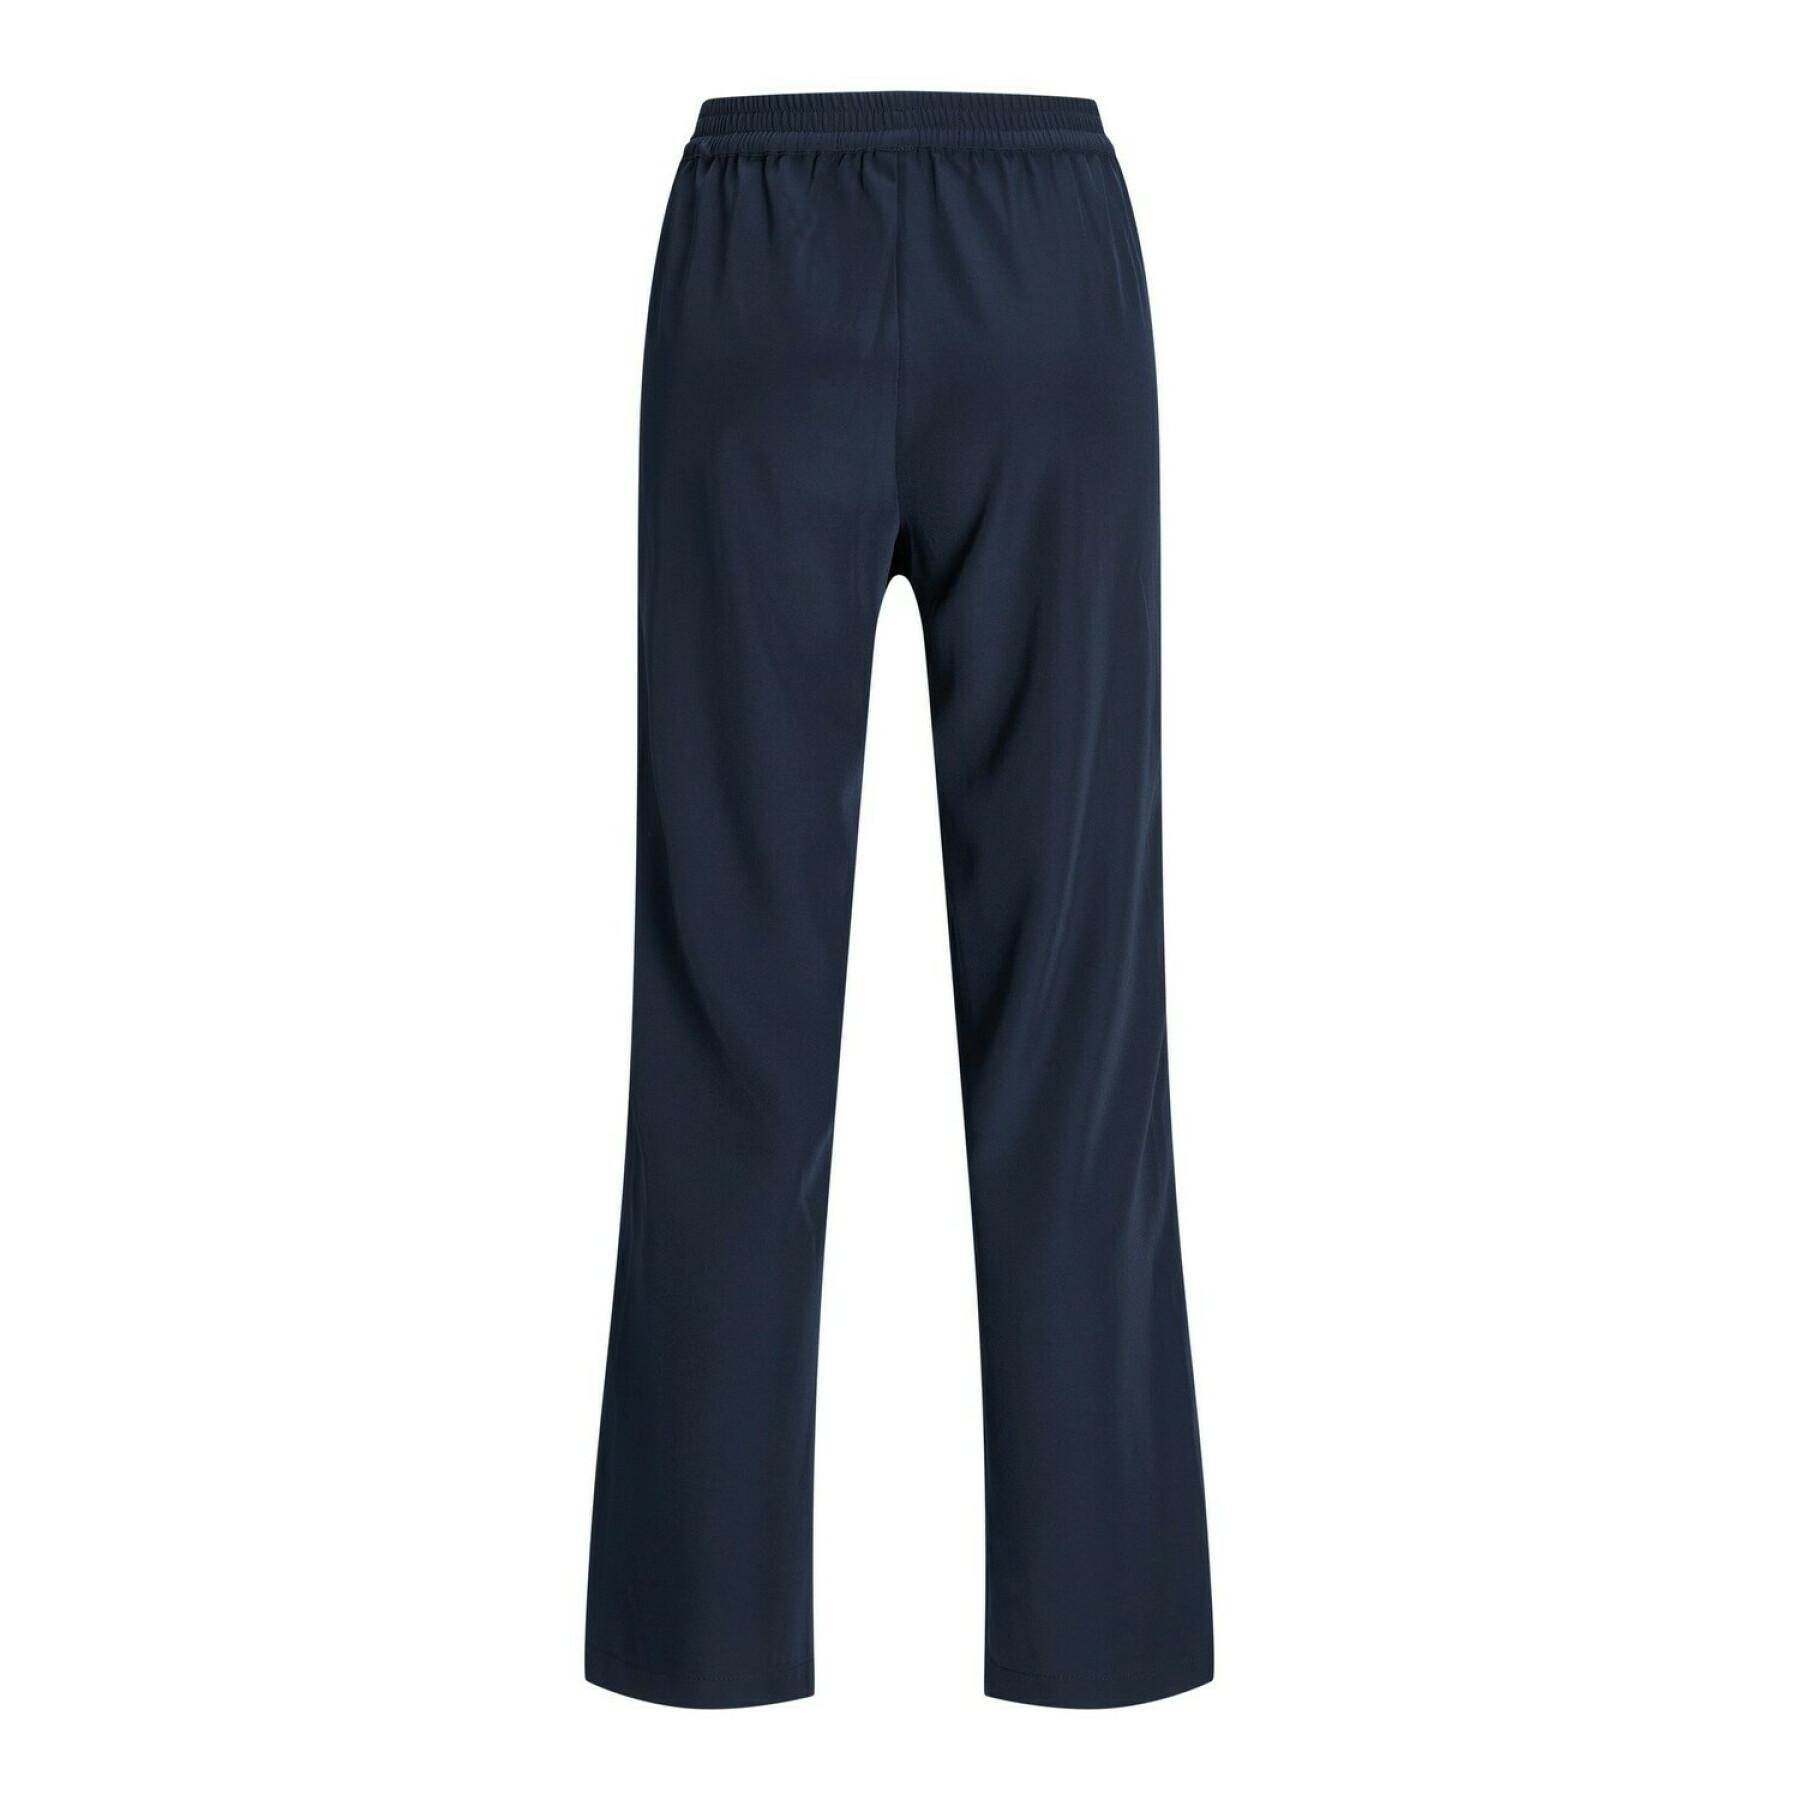 Women's trousers Jack & Jones poppy